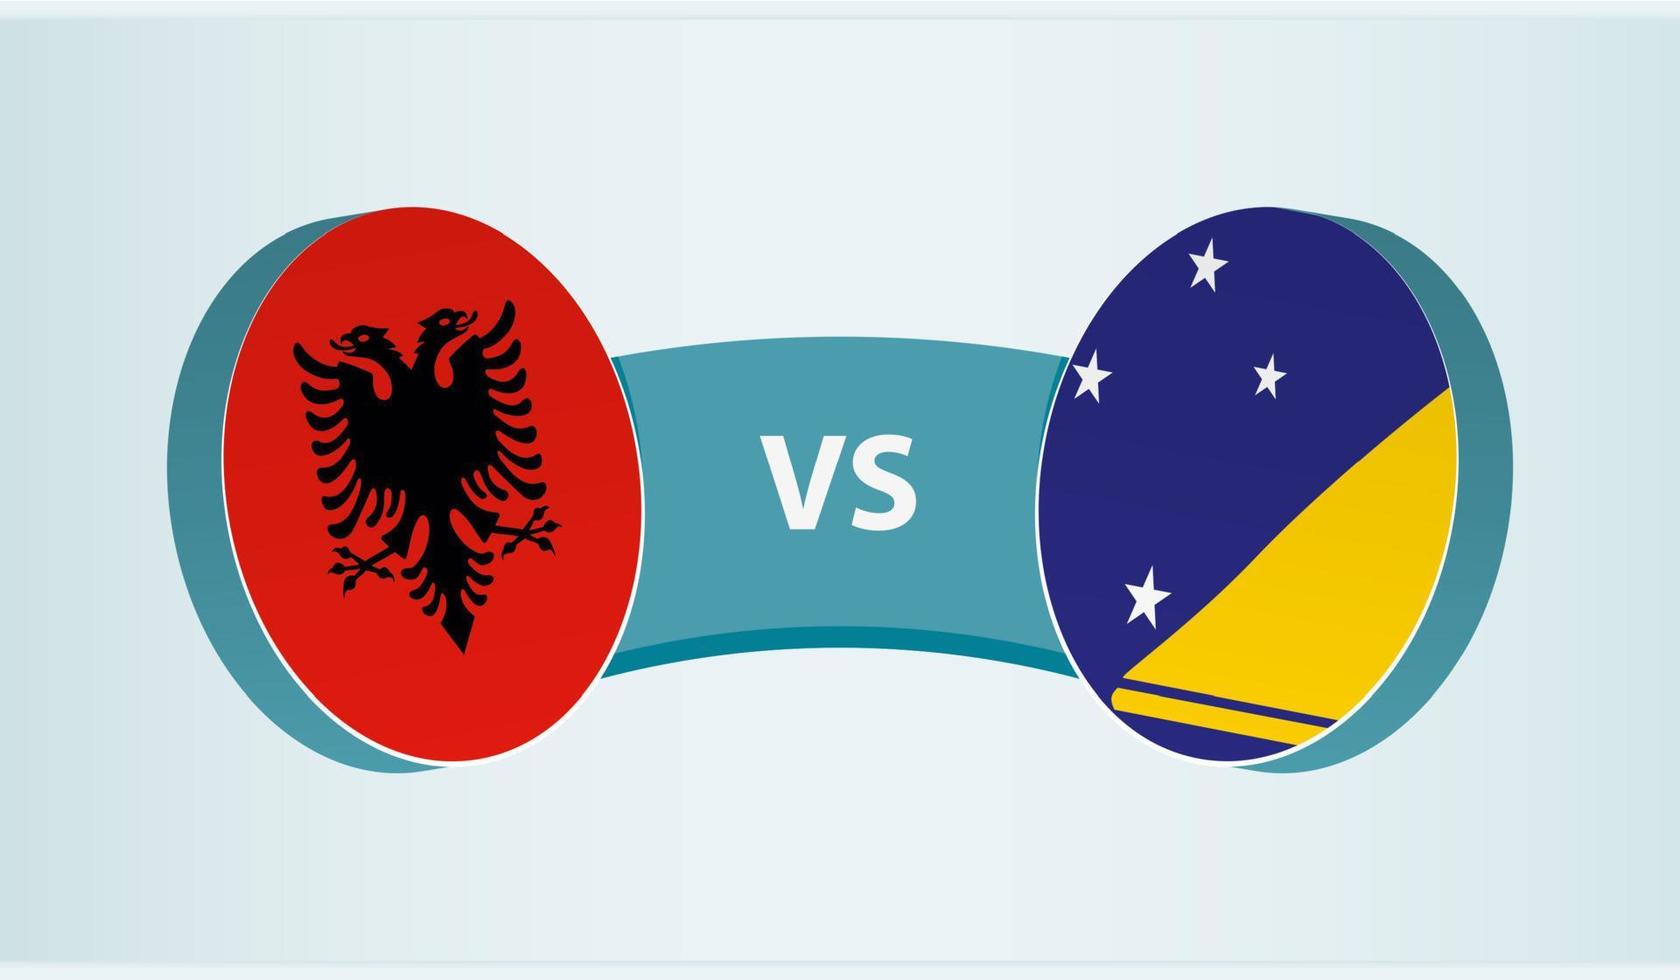 Albania versus Tokelau, team sports competition concept. vector